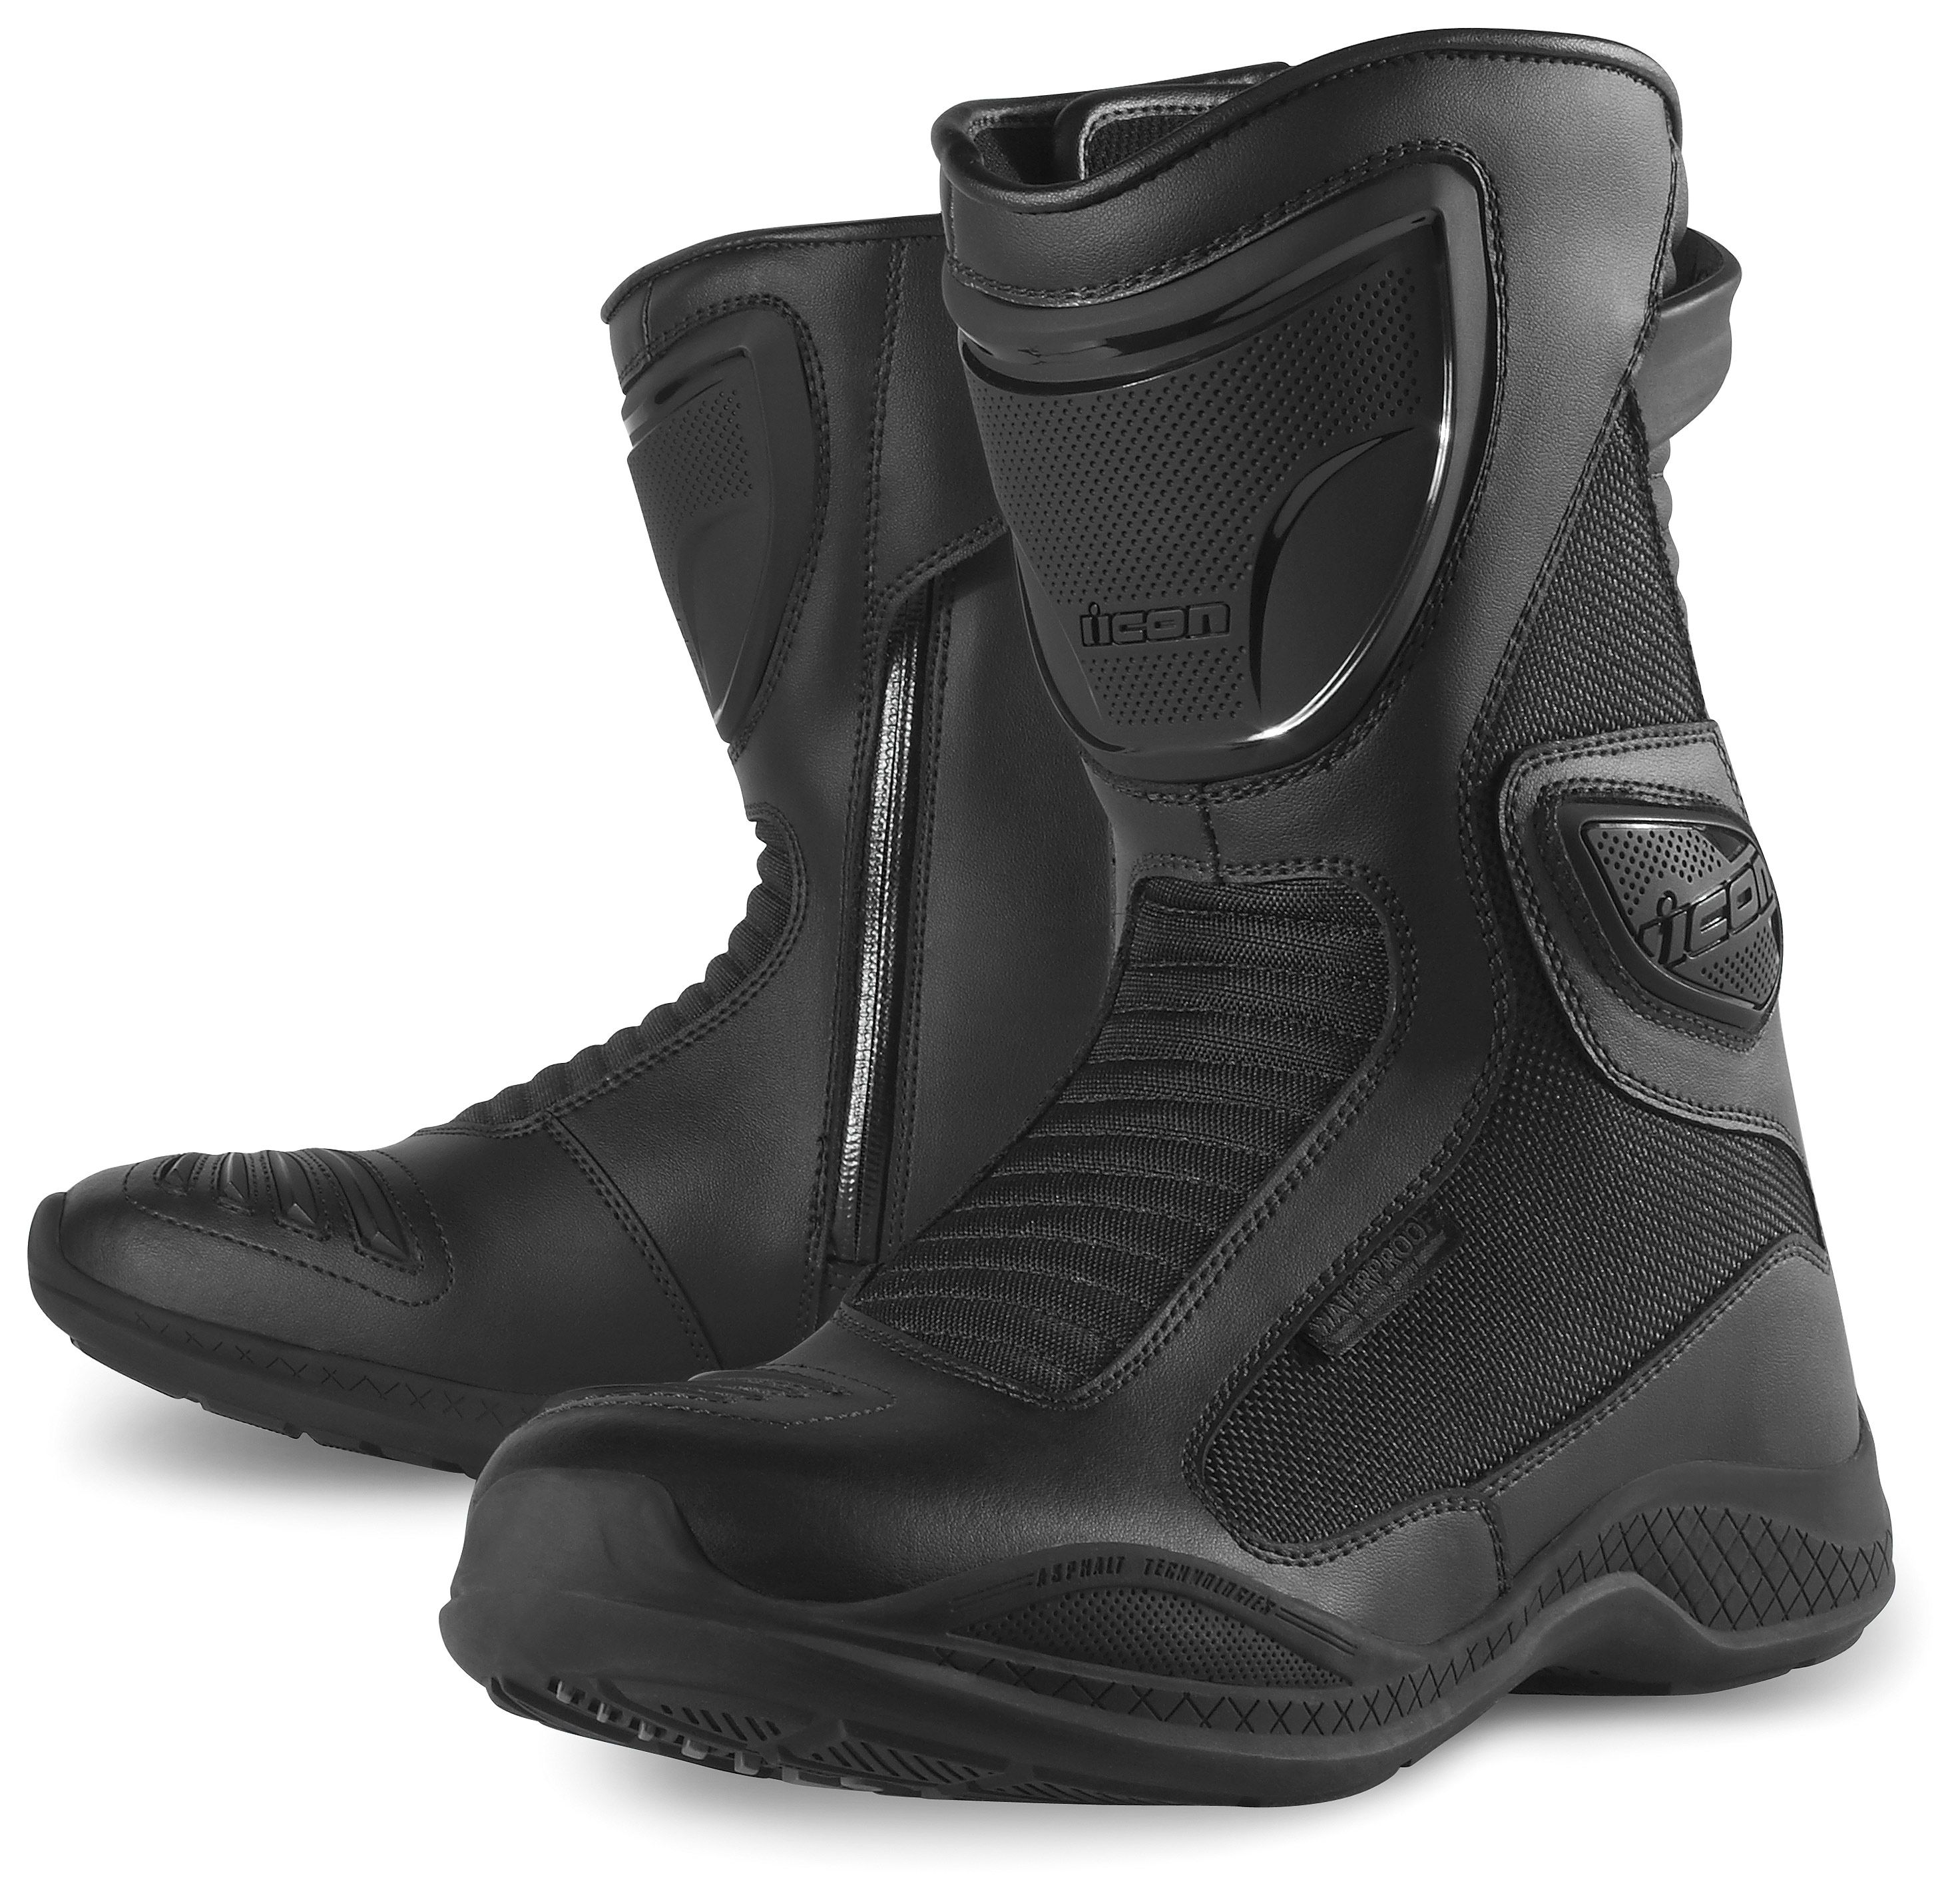 waterproof boots icon reign waterproof womenu0027s boots - revzilla rkldmoe